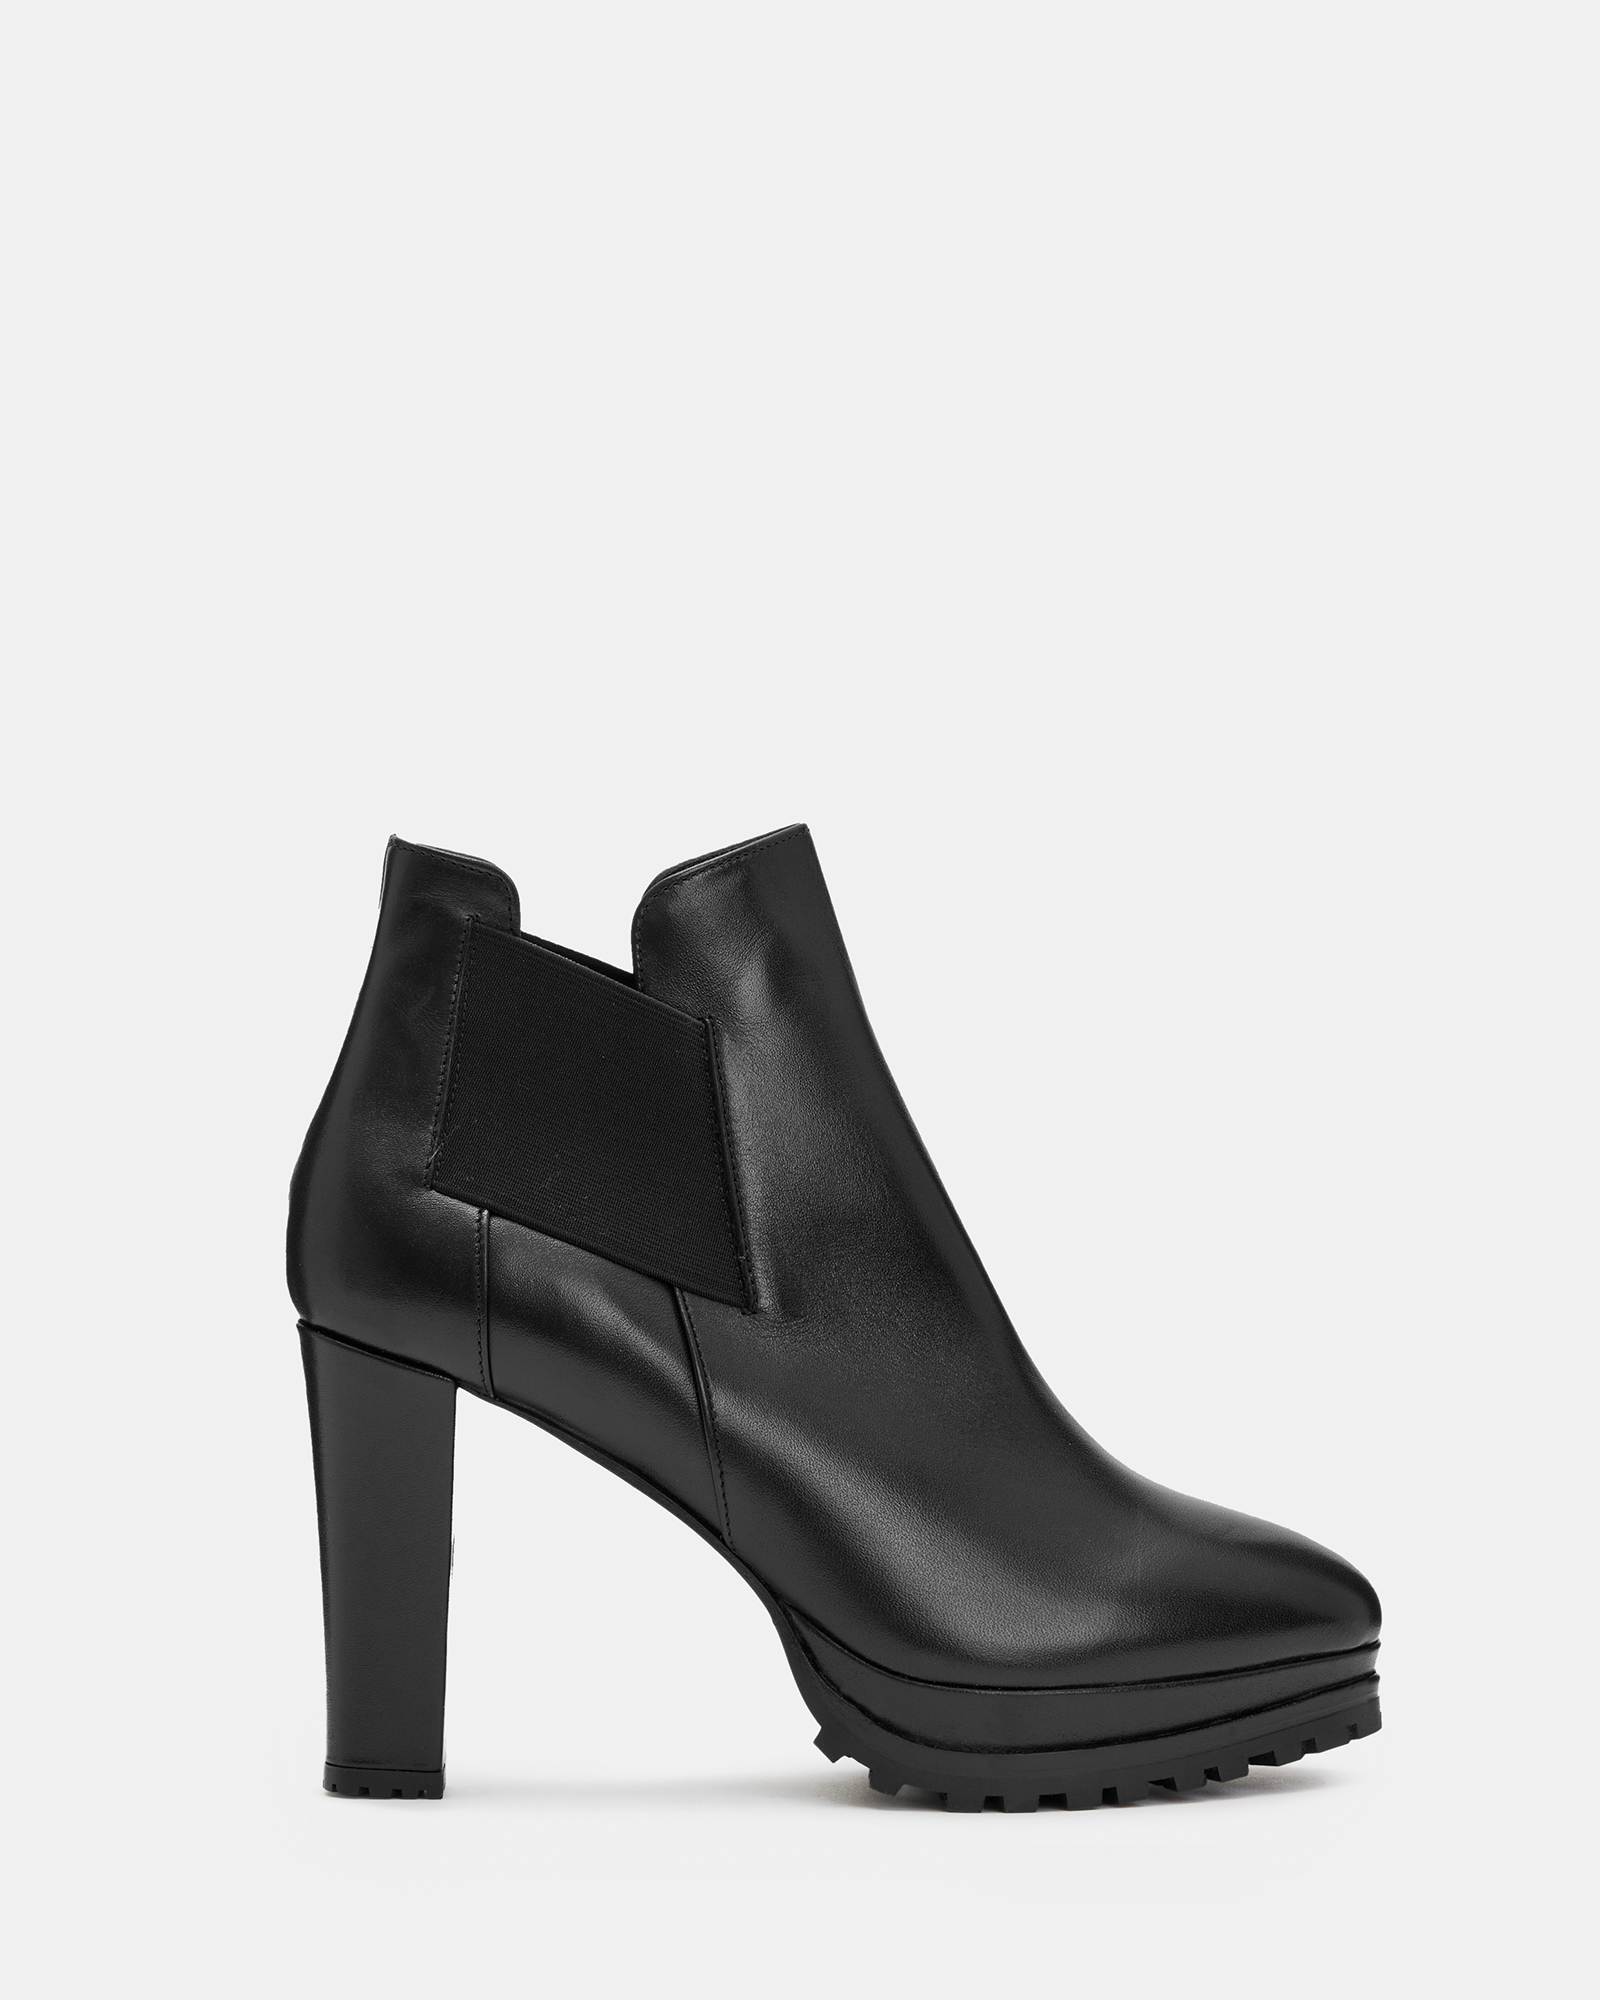 AllSaints Women's Leather Essential Sarris Boot, Black, Size: UK 8/US 10/EU 41